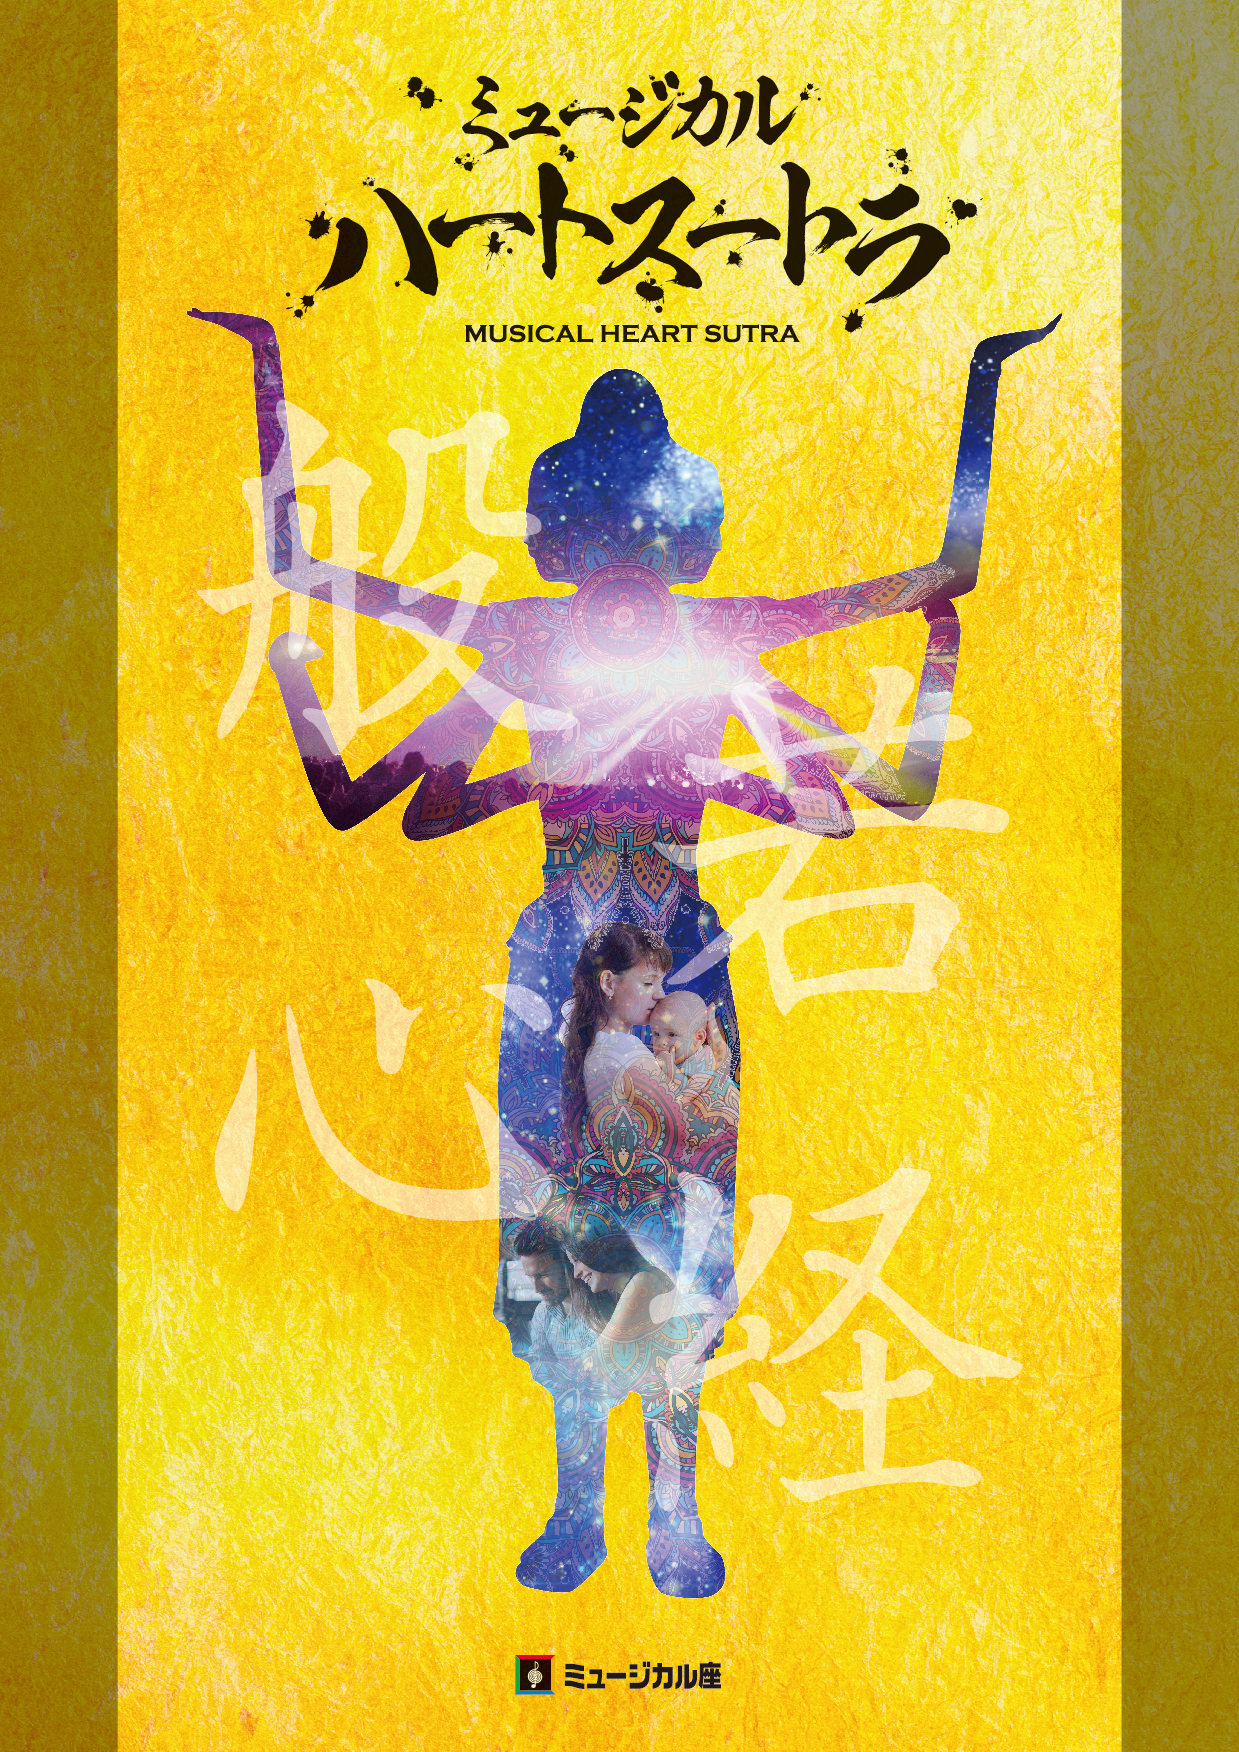 【出演情報】ミュージカル座10月公演「ハートスートラ」に松尾璃空が出演します！